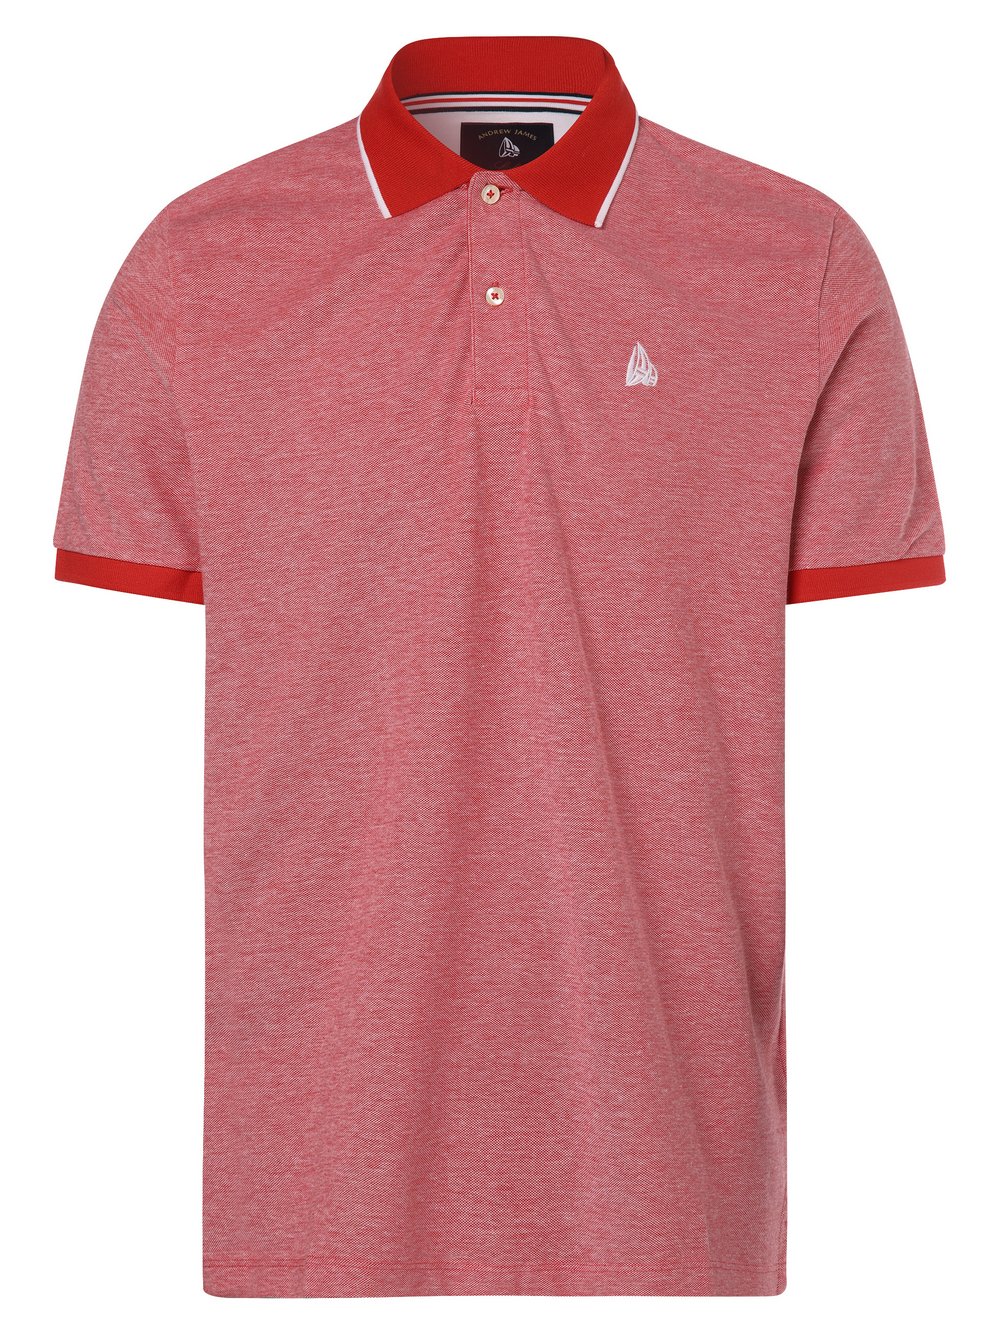 Andrew James Sailing - Męska koszulka polo, czerwony